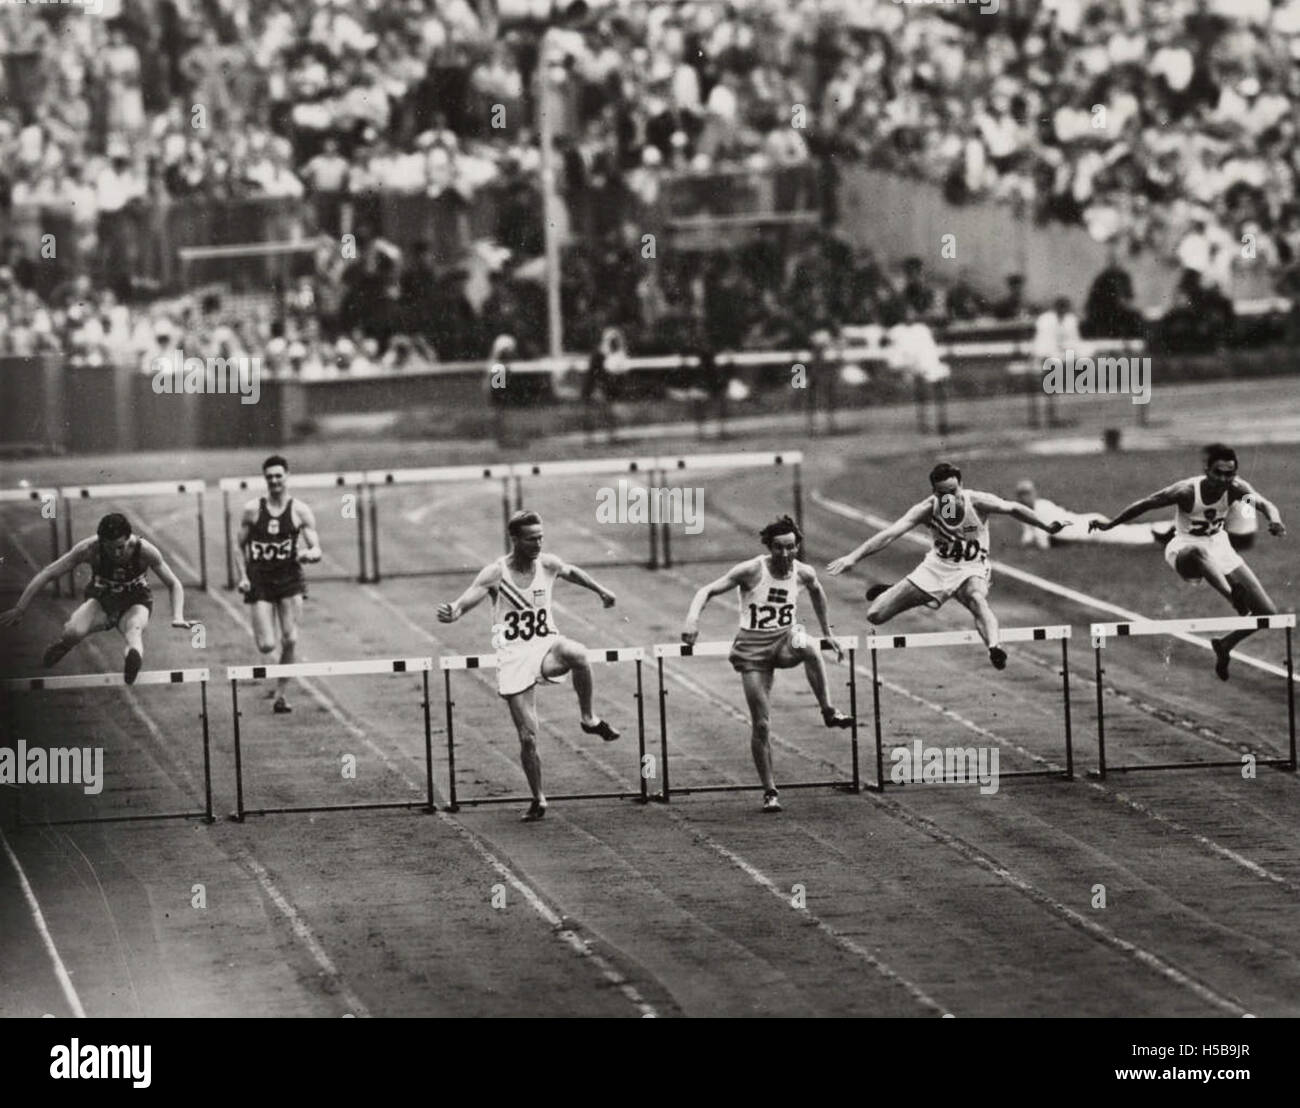 Larsson de la Suède remporte le 400 mètres haies chaleur Olympique, Londres, 1948. Banque D'Images